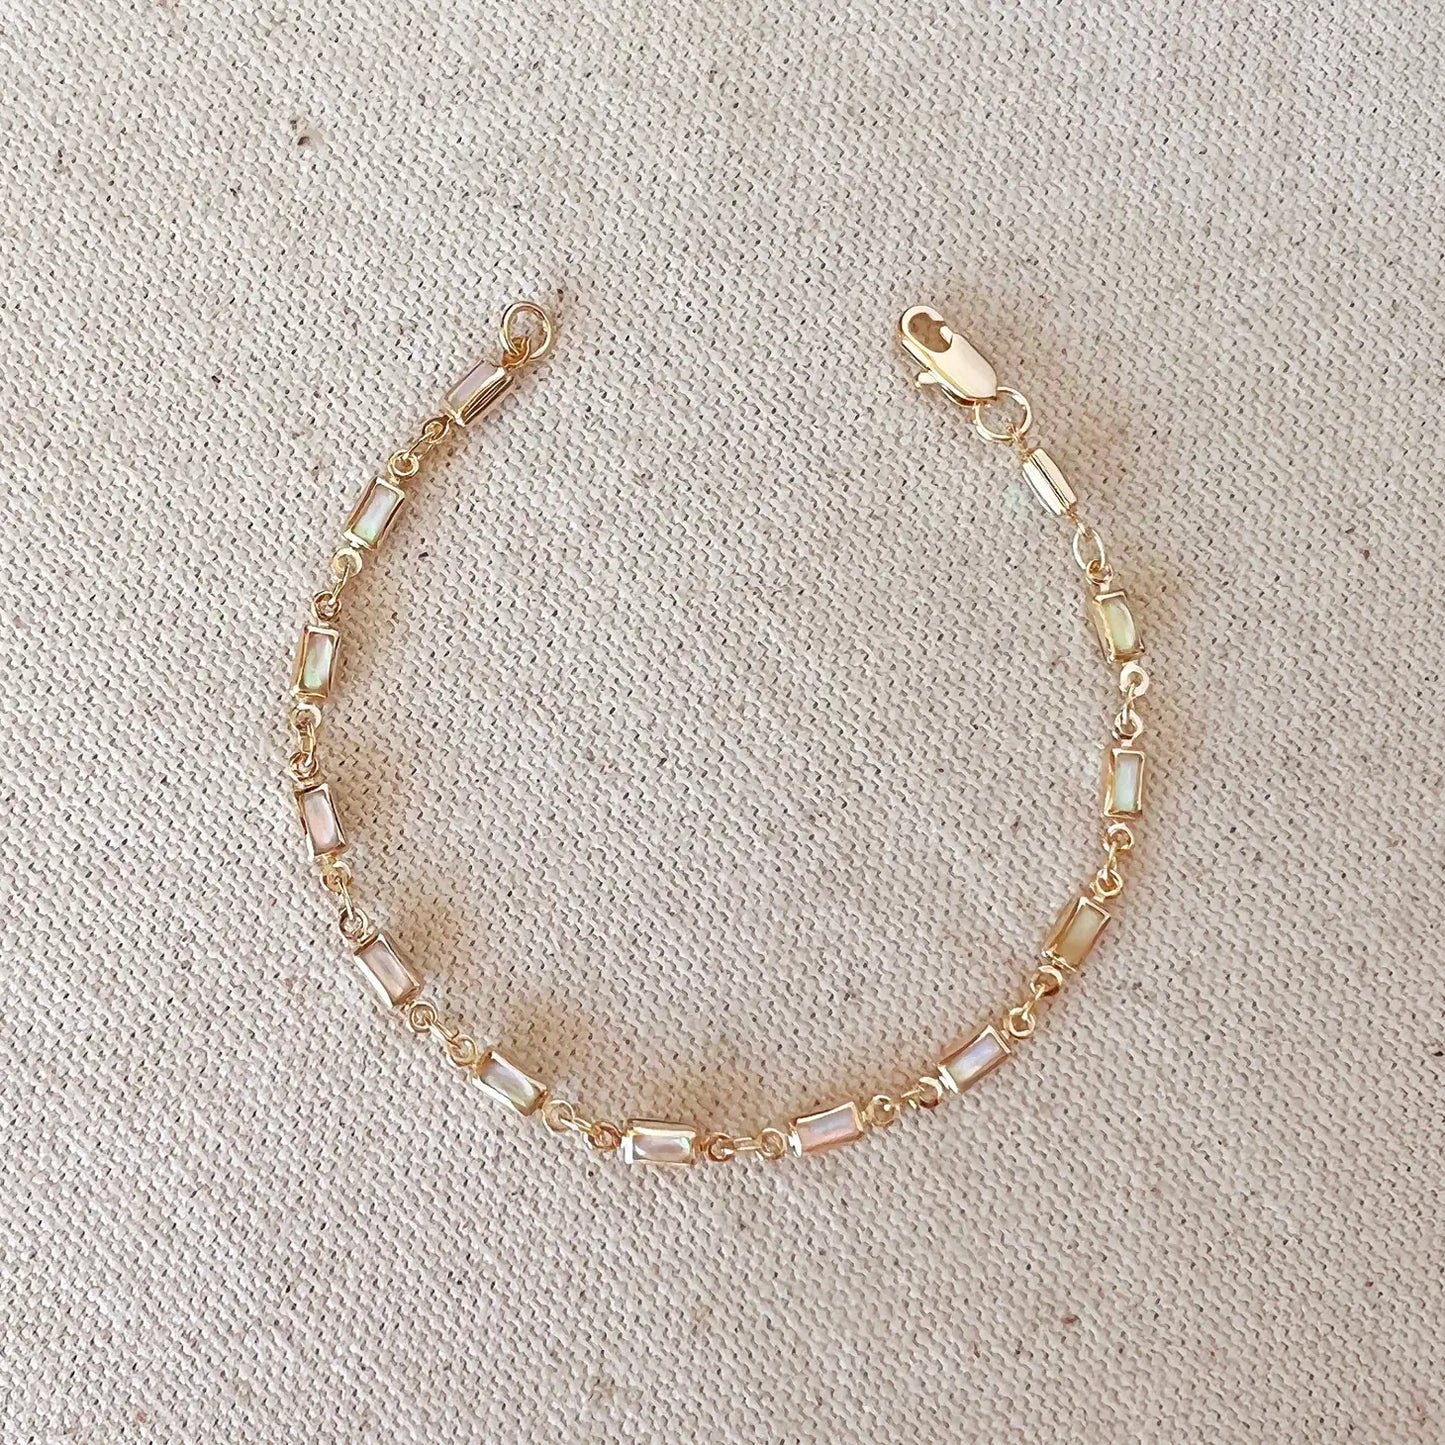 Goldfi | Oaplite Bracelet , gold filled